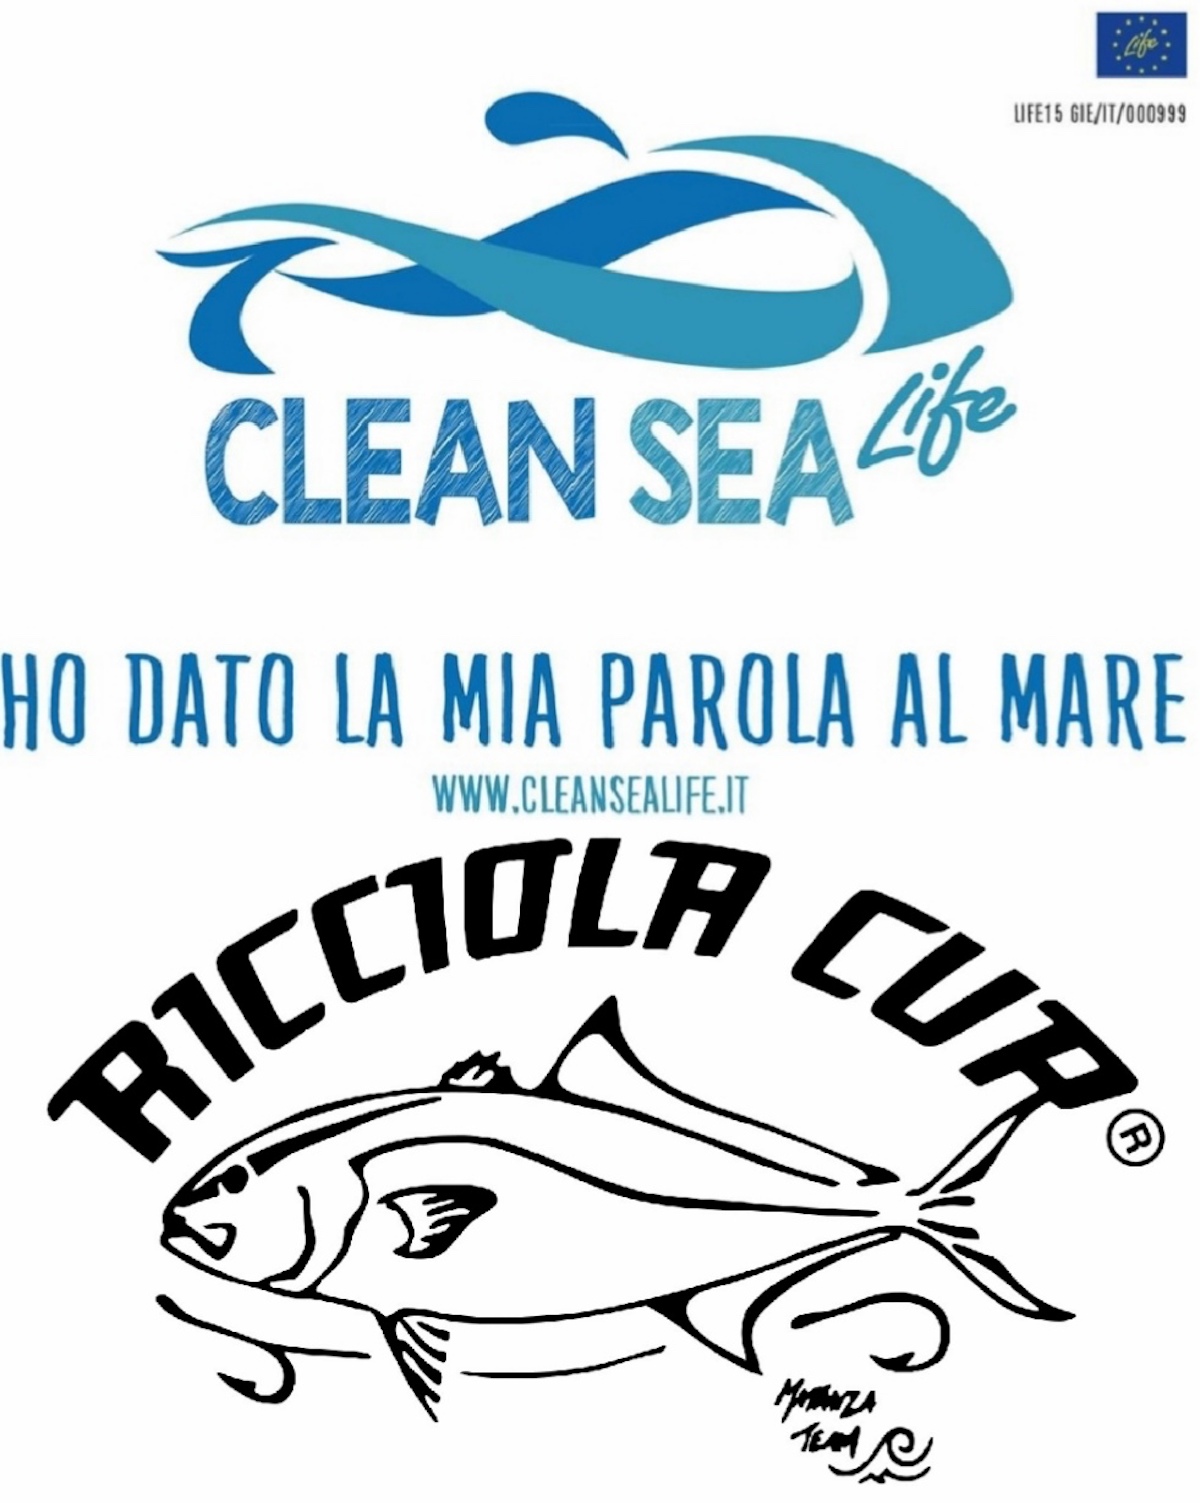 ricciola cup progetto clean sea life isola del giglio giglionews